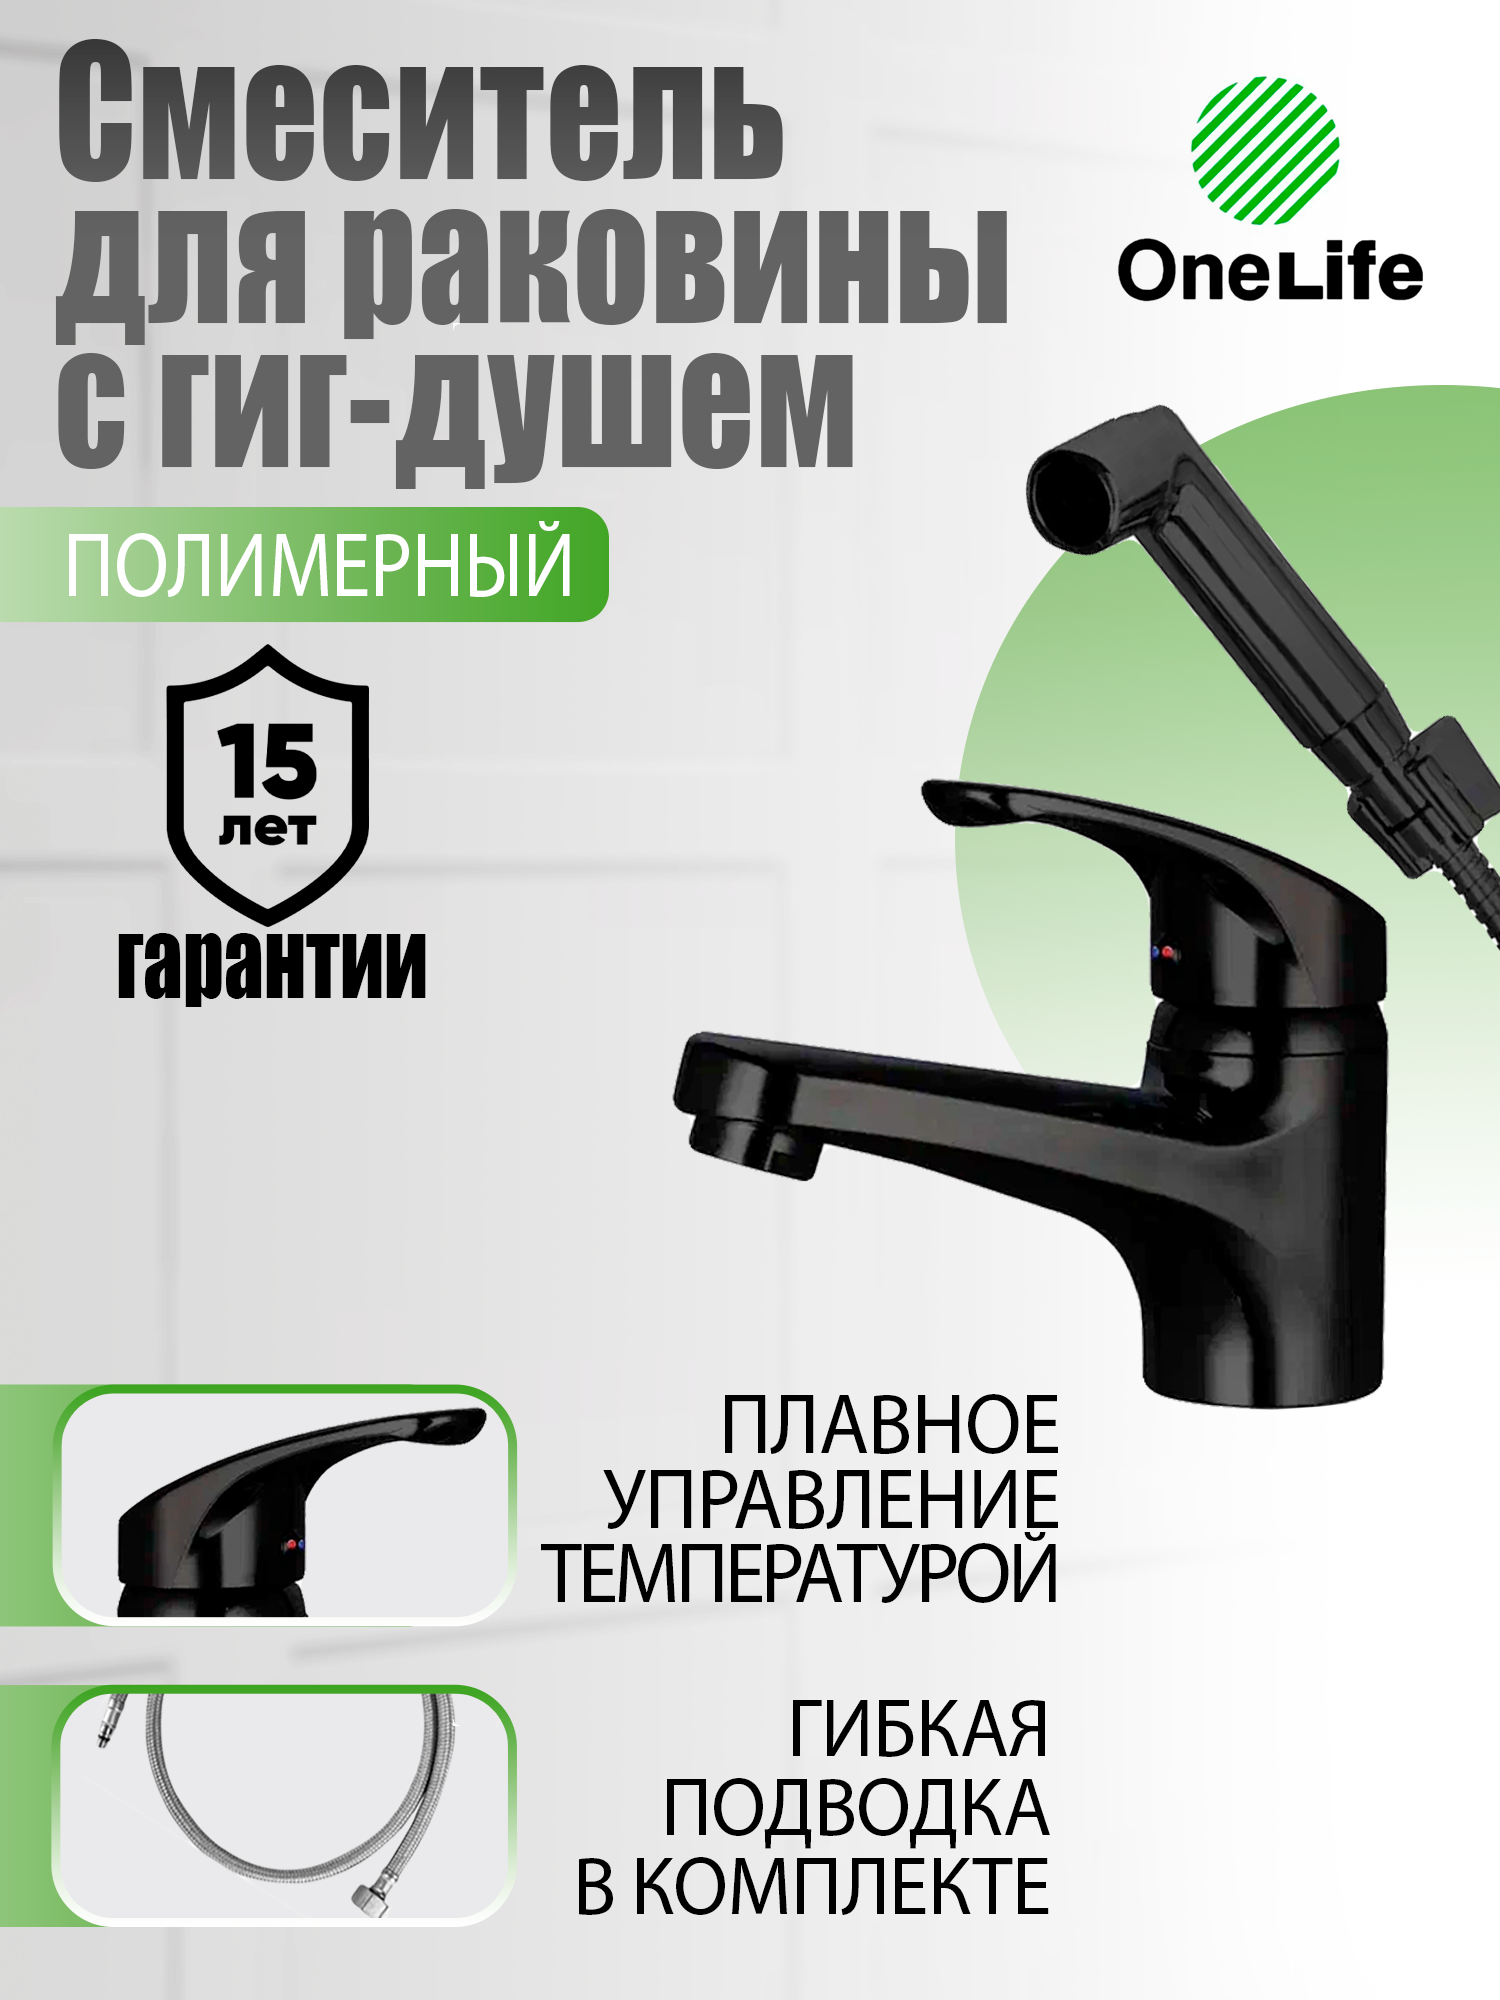 Полимерный смеситель для раковины с гигиеническим душем OneLife P01-022b, черный смеситель для раковины elghansa 1602235 bm02 cr c набором для гигиенического душа